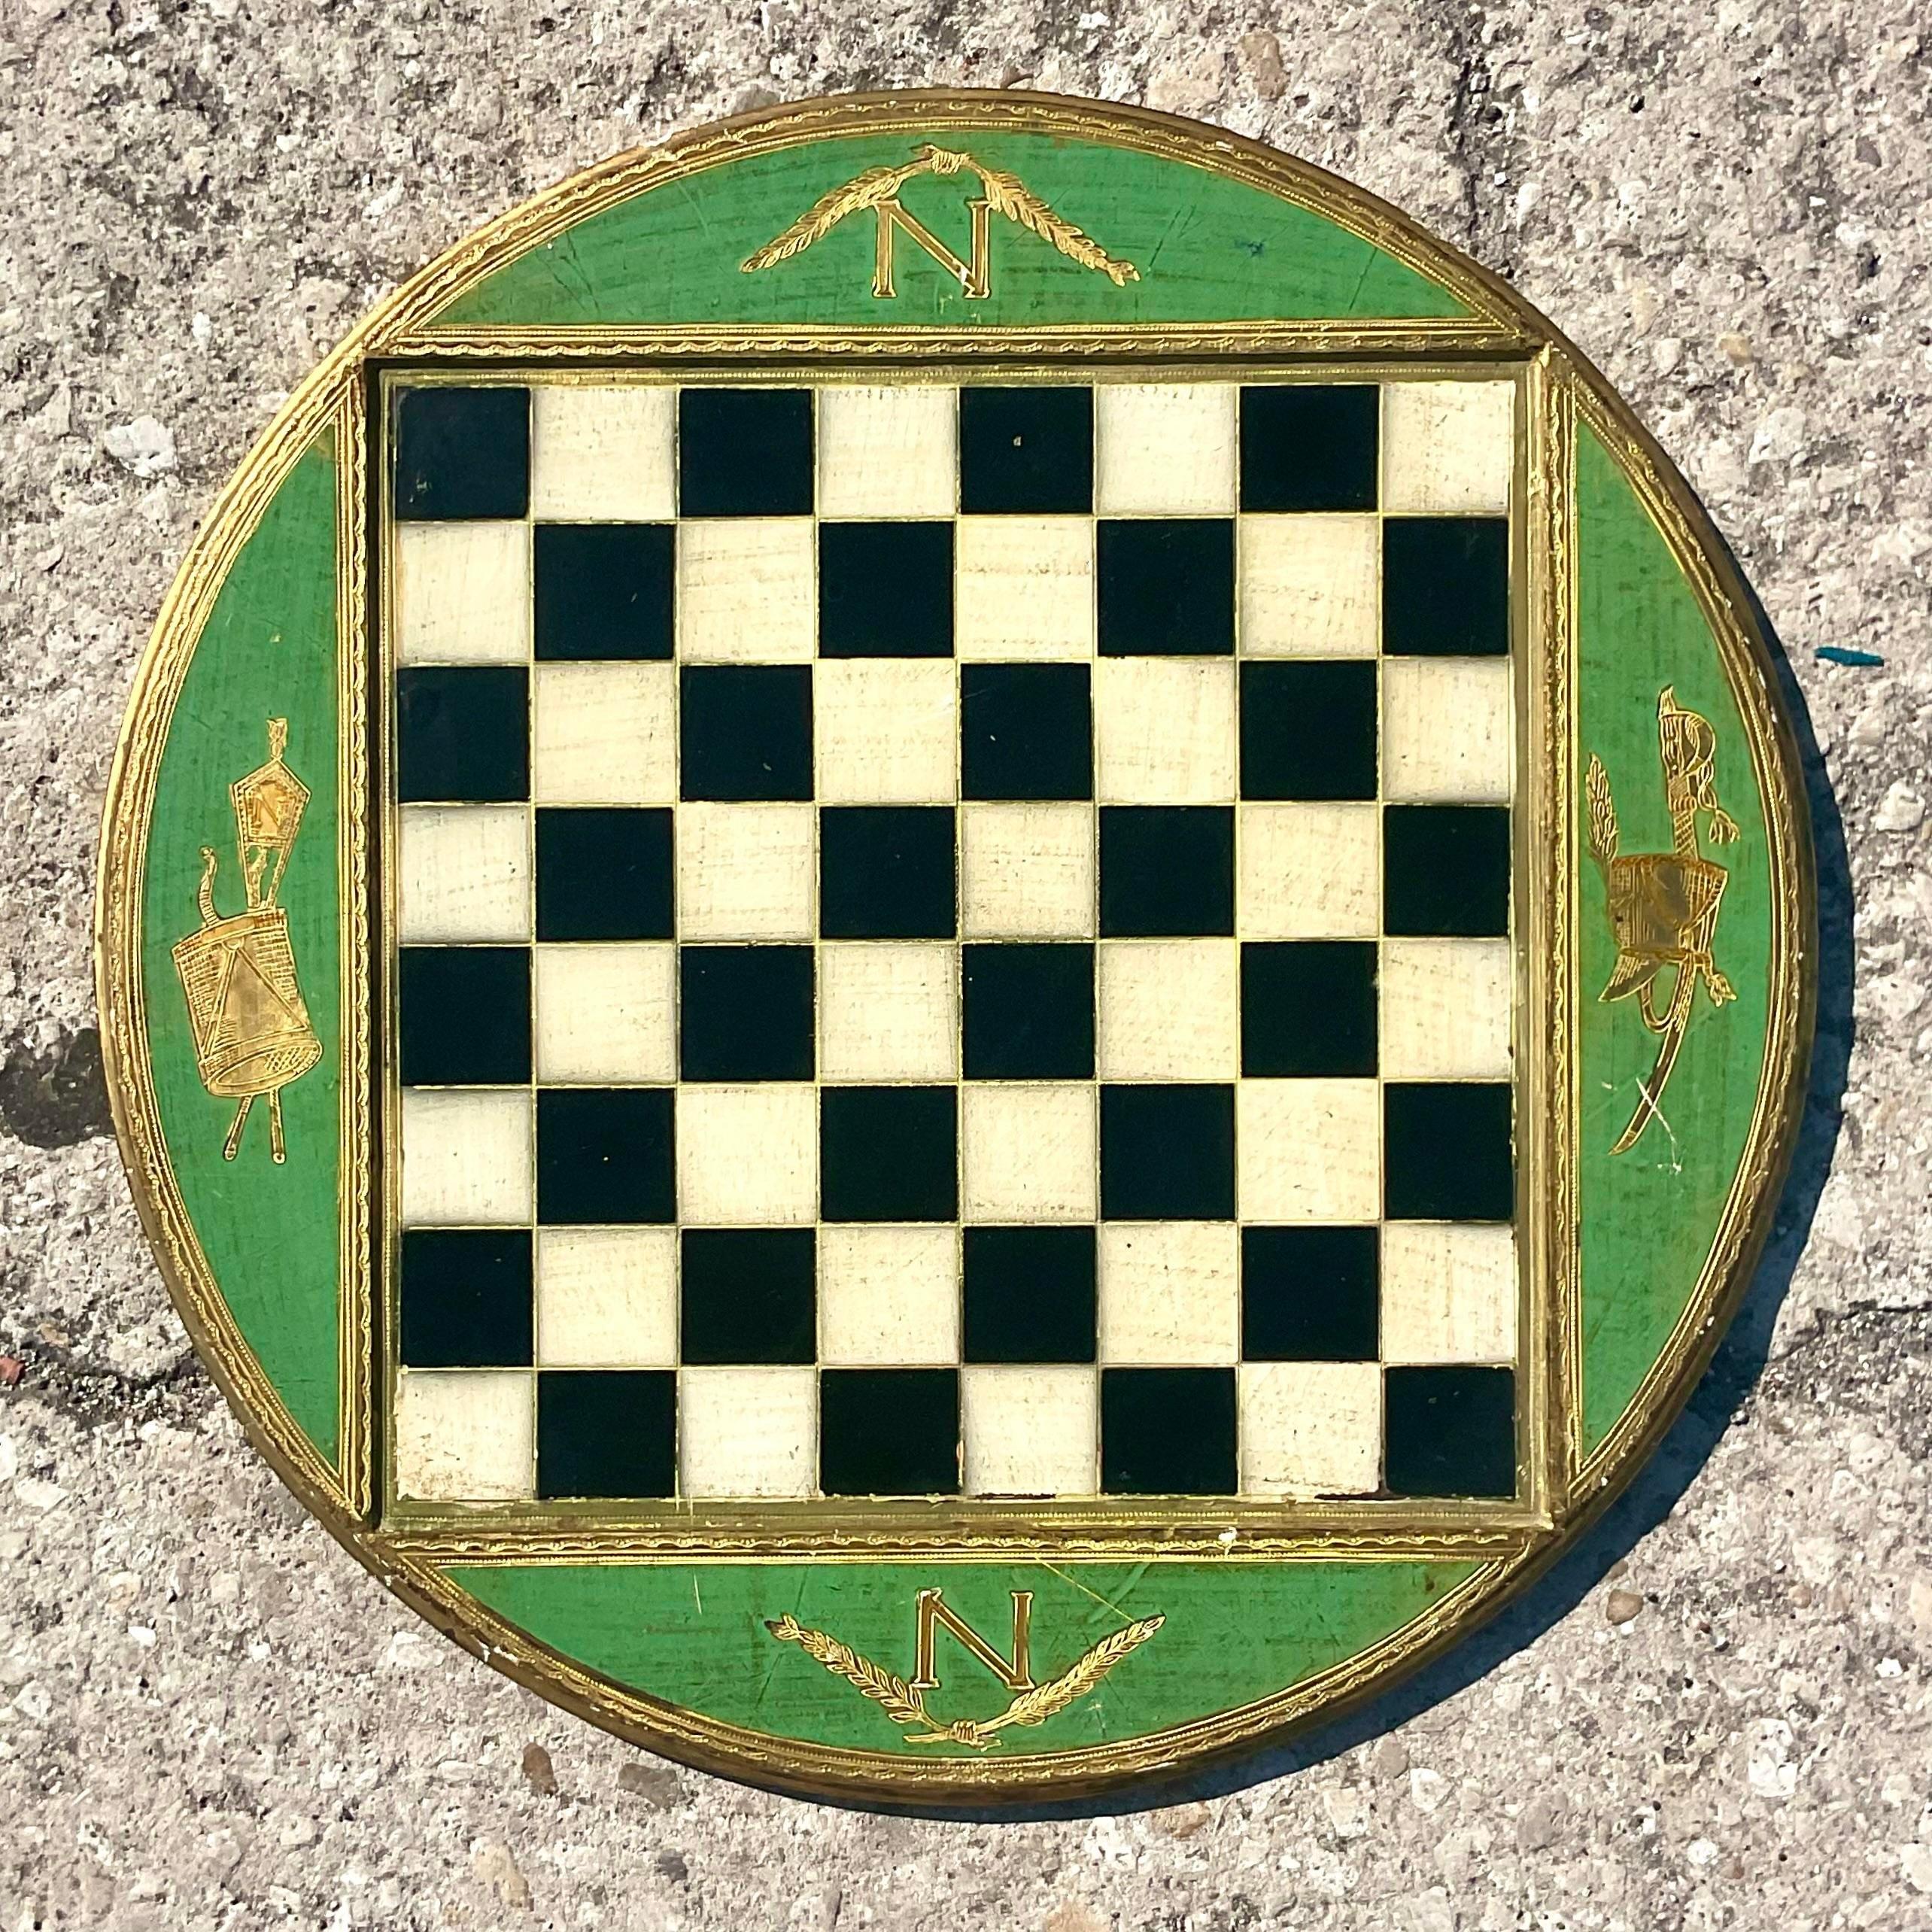 Ein fantastisches italienisches Vintage-Spielbrett. Ein schickes Florentine Schachbrett mit Goldprägung in einem brillanten Olivgrün. Auf der Rückseite vermerkt. Erworben aus einem Nachlass in Palm Beach. 